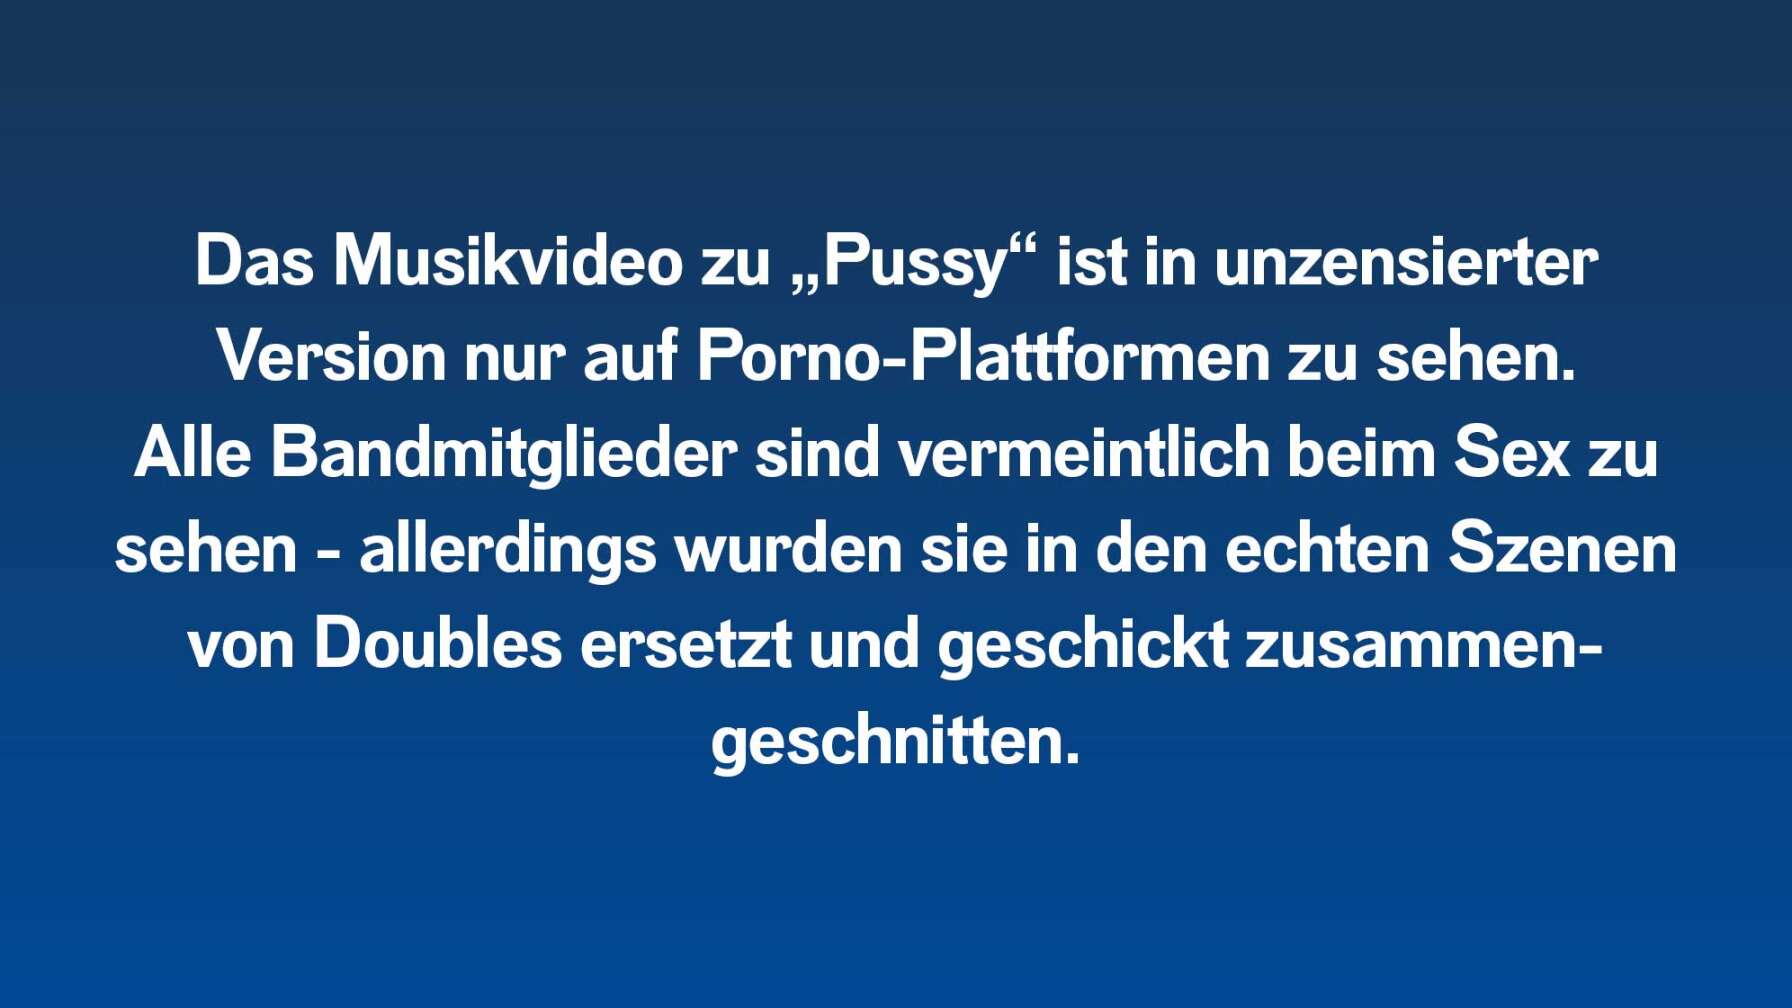 Das Musikvideo zu „Pussy“ ist in unzensierter Version nur auf Porno-Plattformen zu sehen. Alle Bandmitglieder sind vermeintlich beim Sex zu sehen - allerdings wurden sie in den echten Szenen von Doubles ersetzt und geschickt zusammengeschnitten.